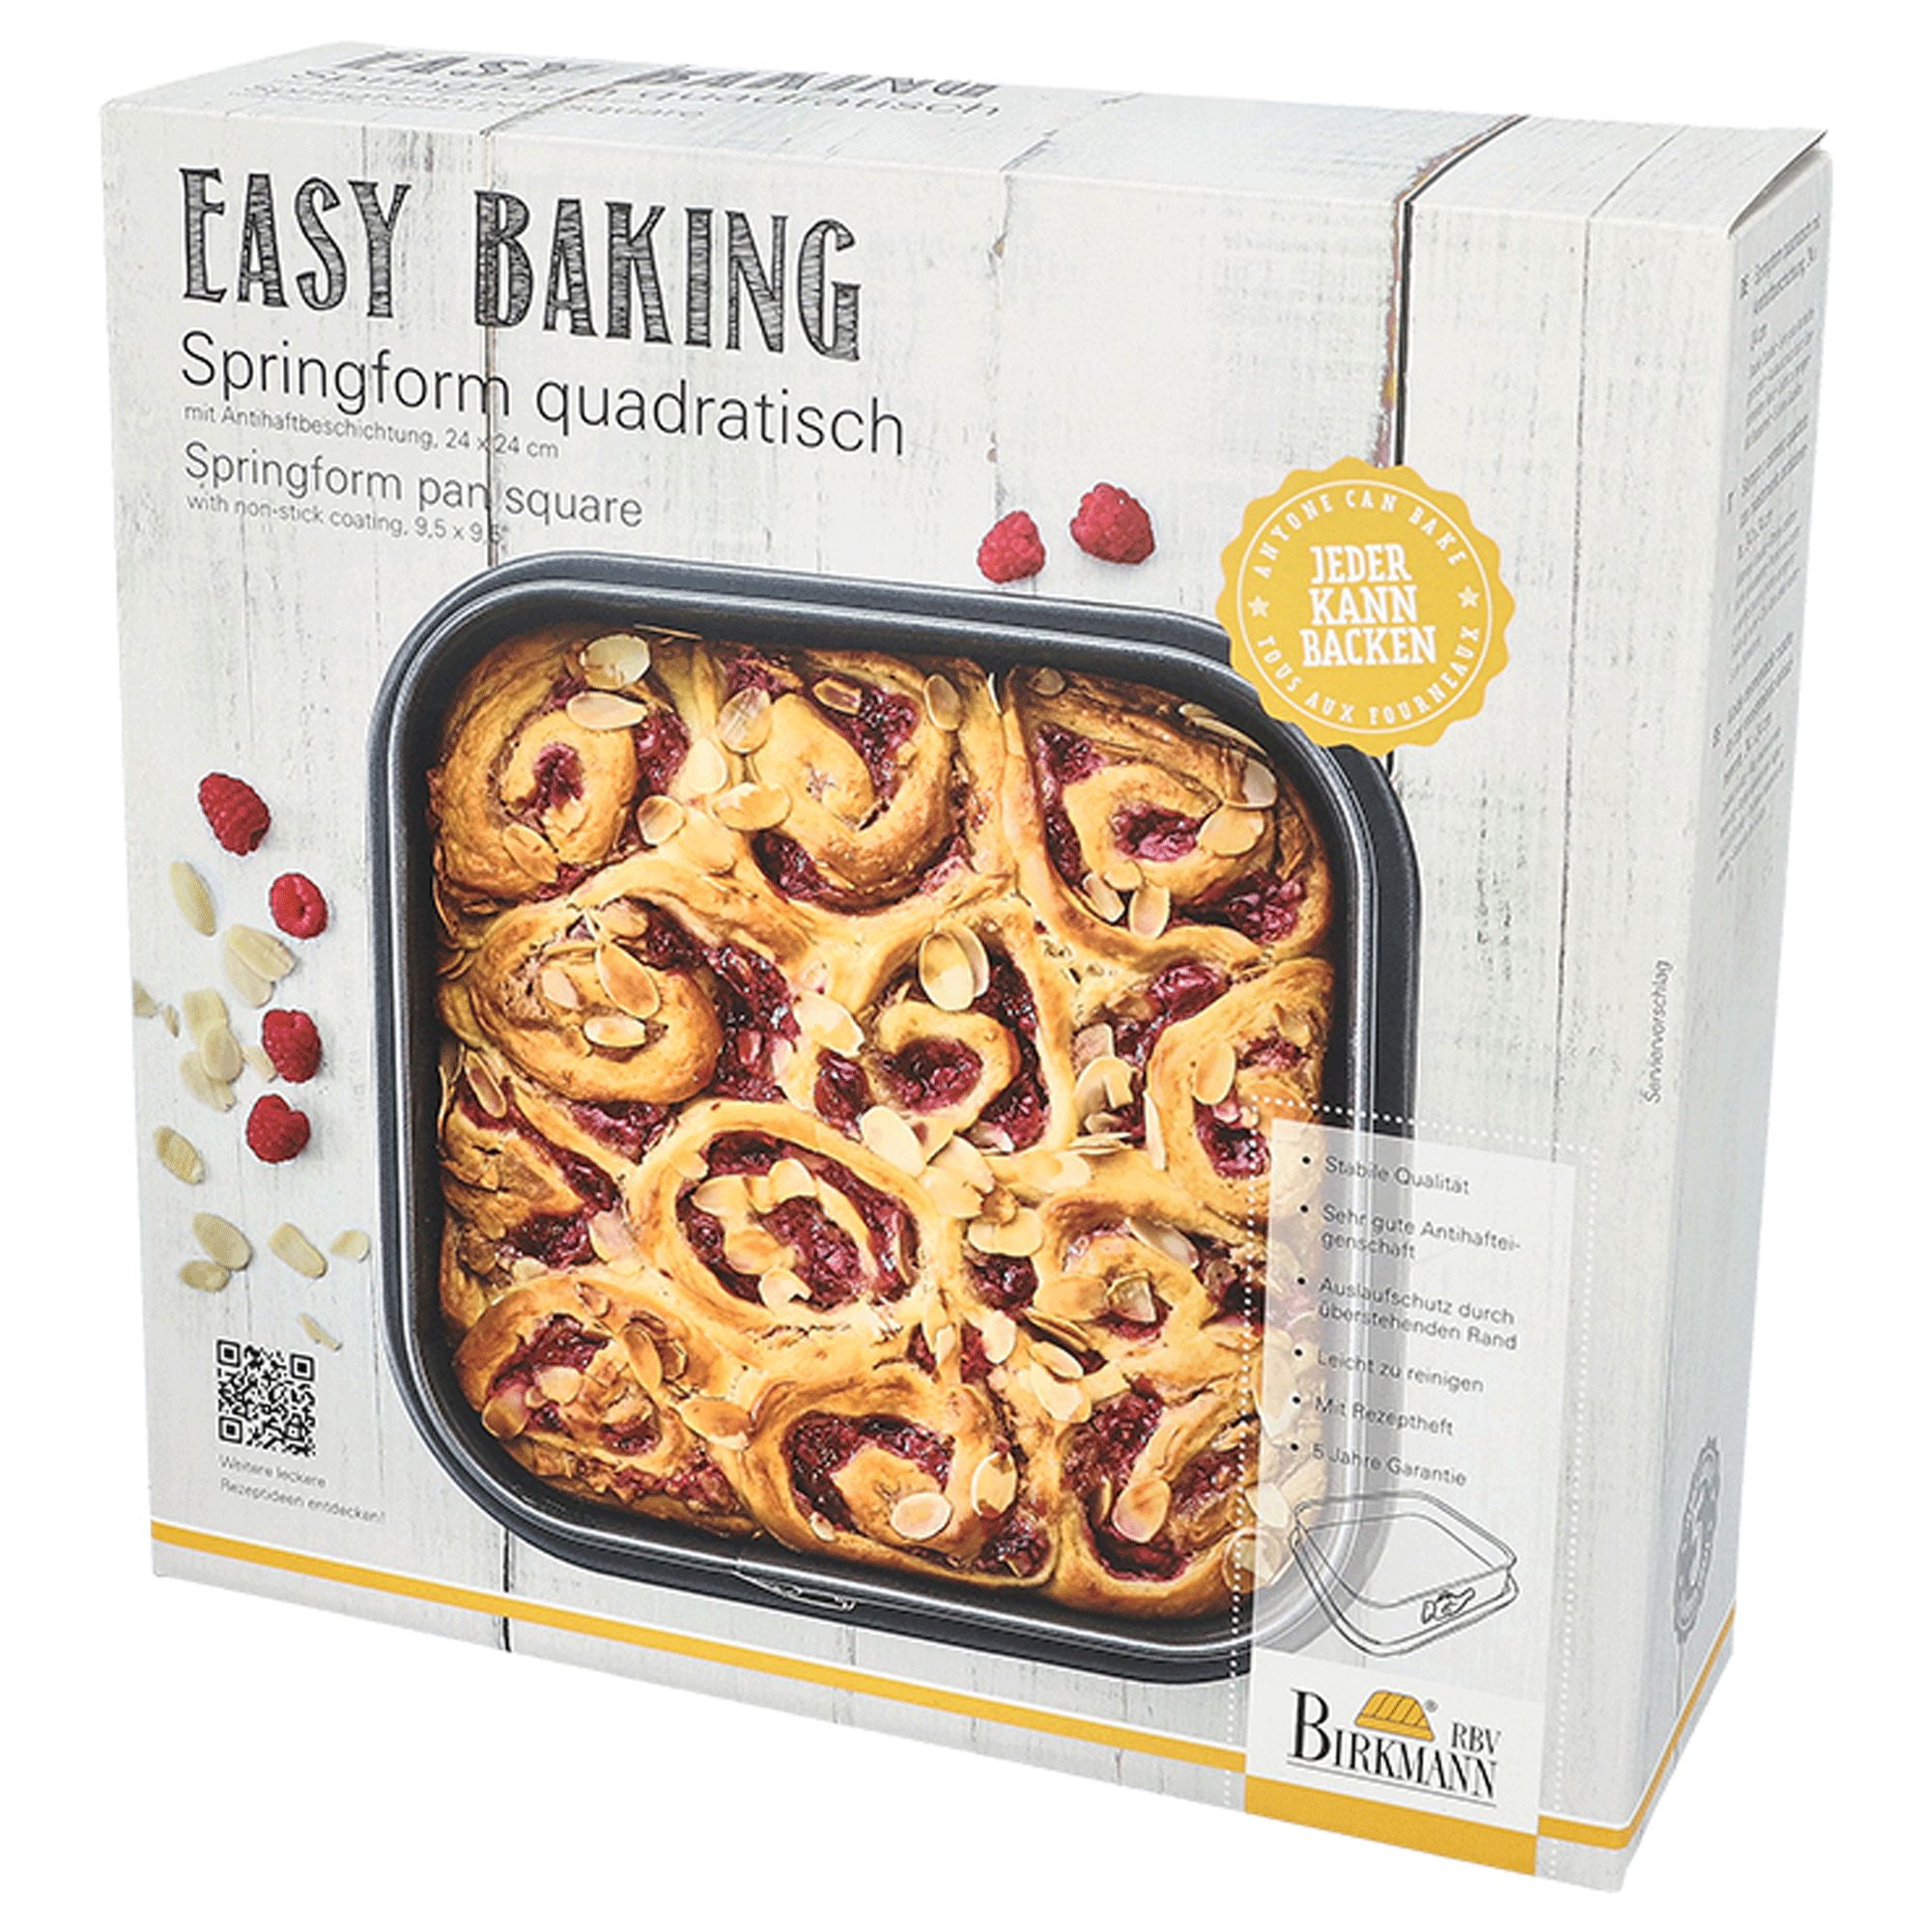 Birkmann - Square baking pan - Easy Baking